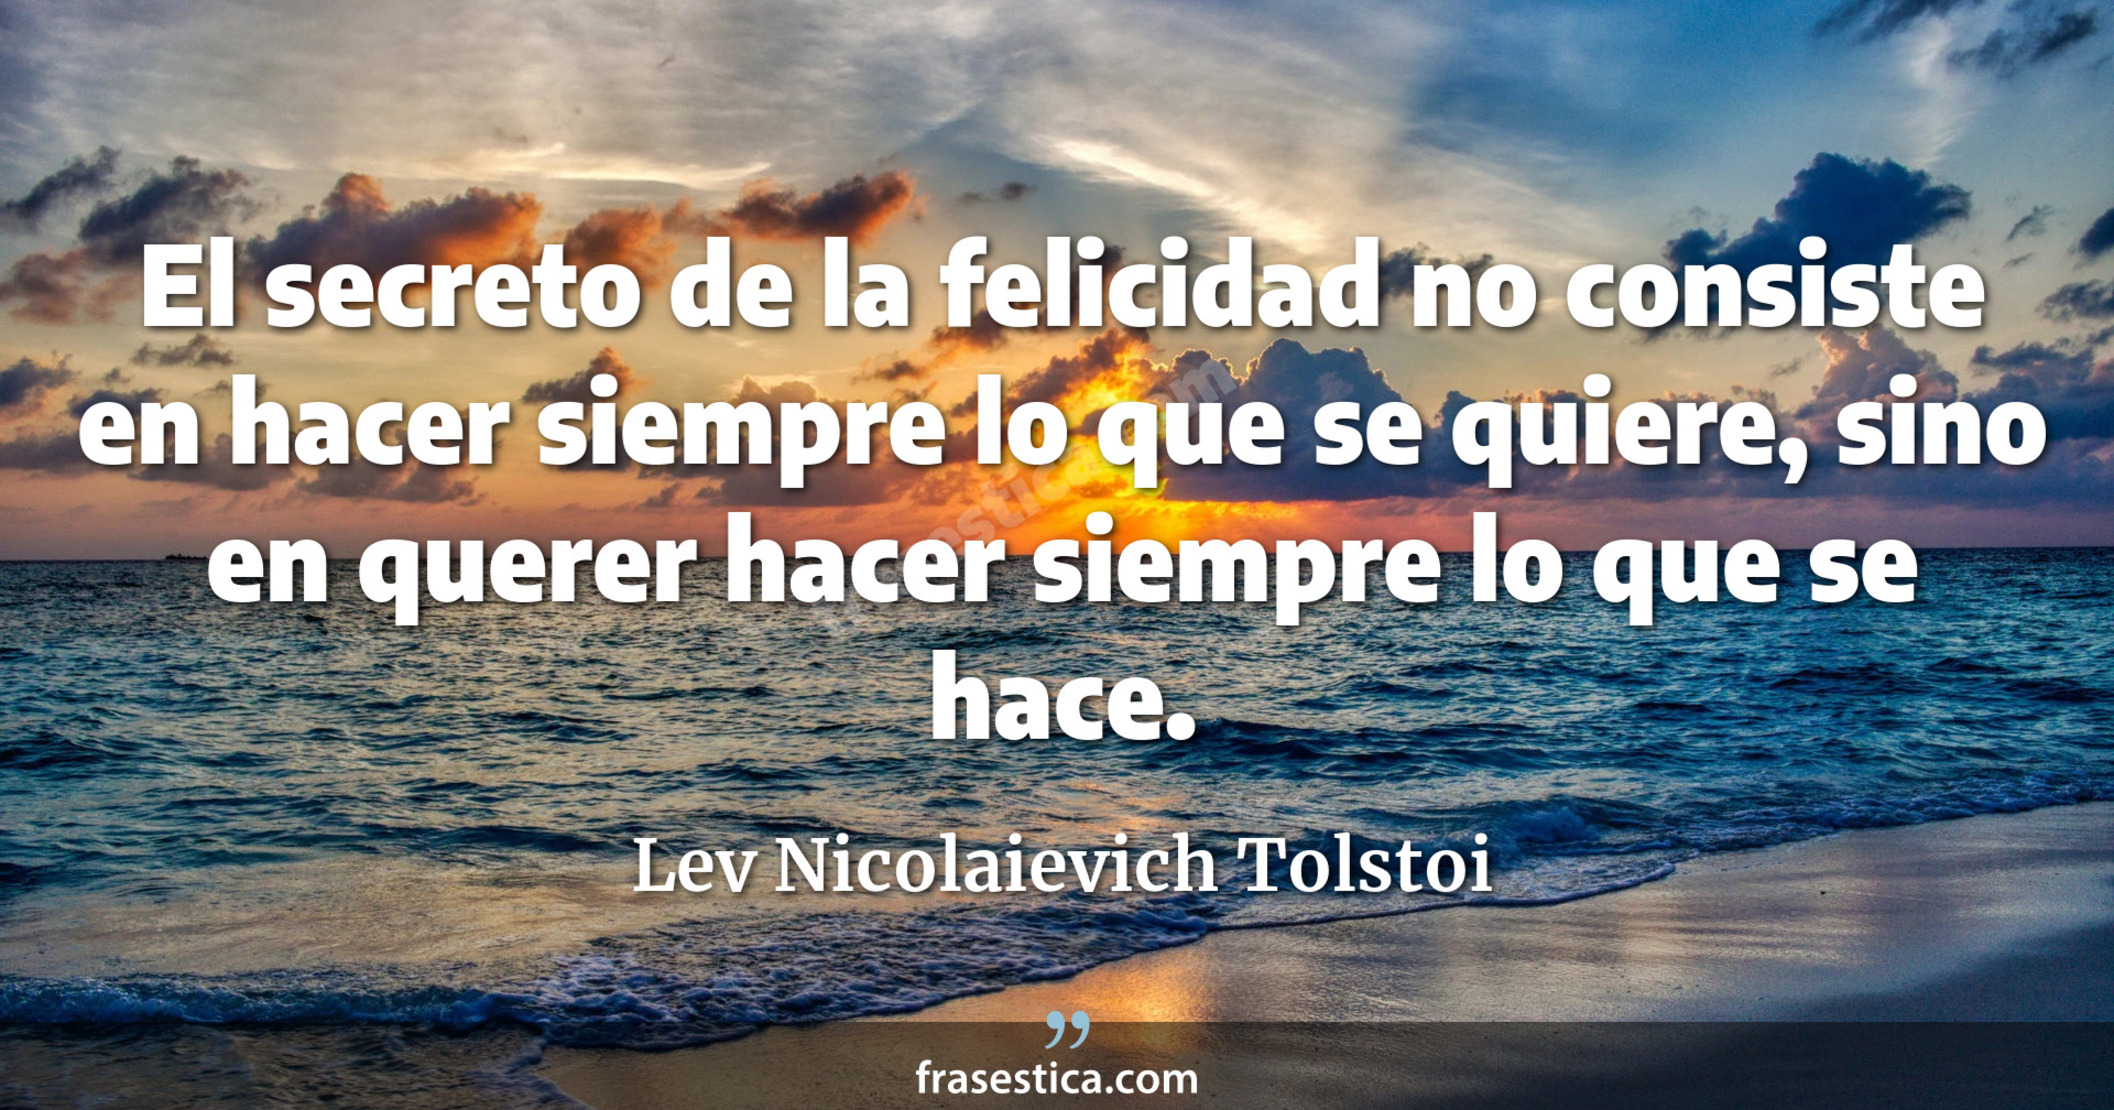 El secreto de la felicidad no consiste en hacer siempre lo que se quiere, sino en querer hacer siempre lo que se hace. - Lev Nicolaievich Tolstoi